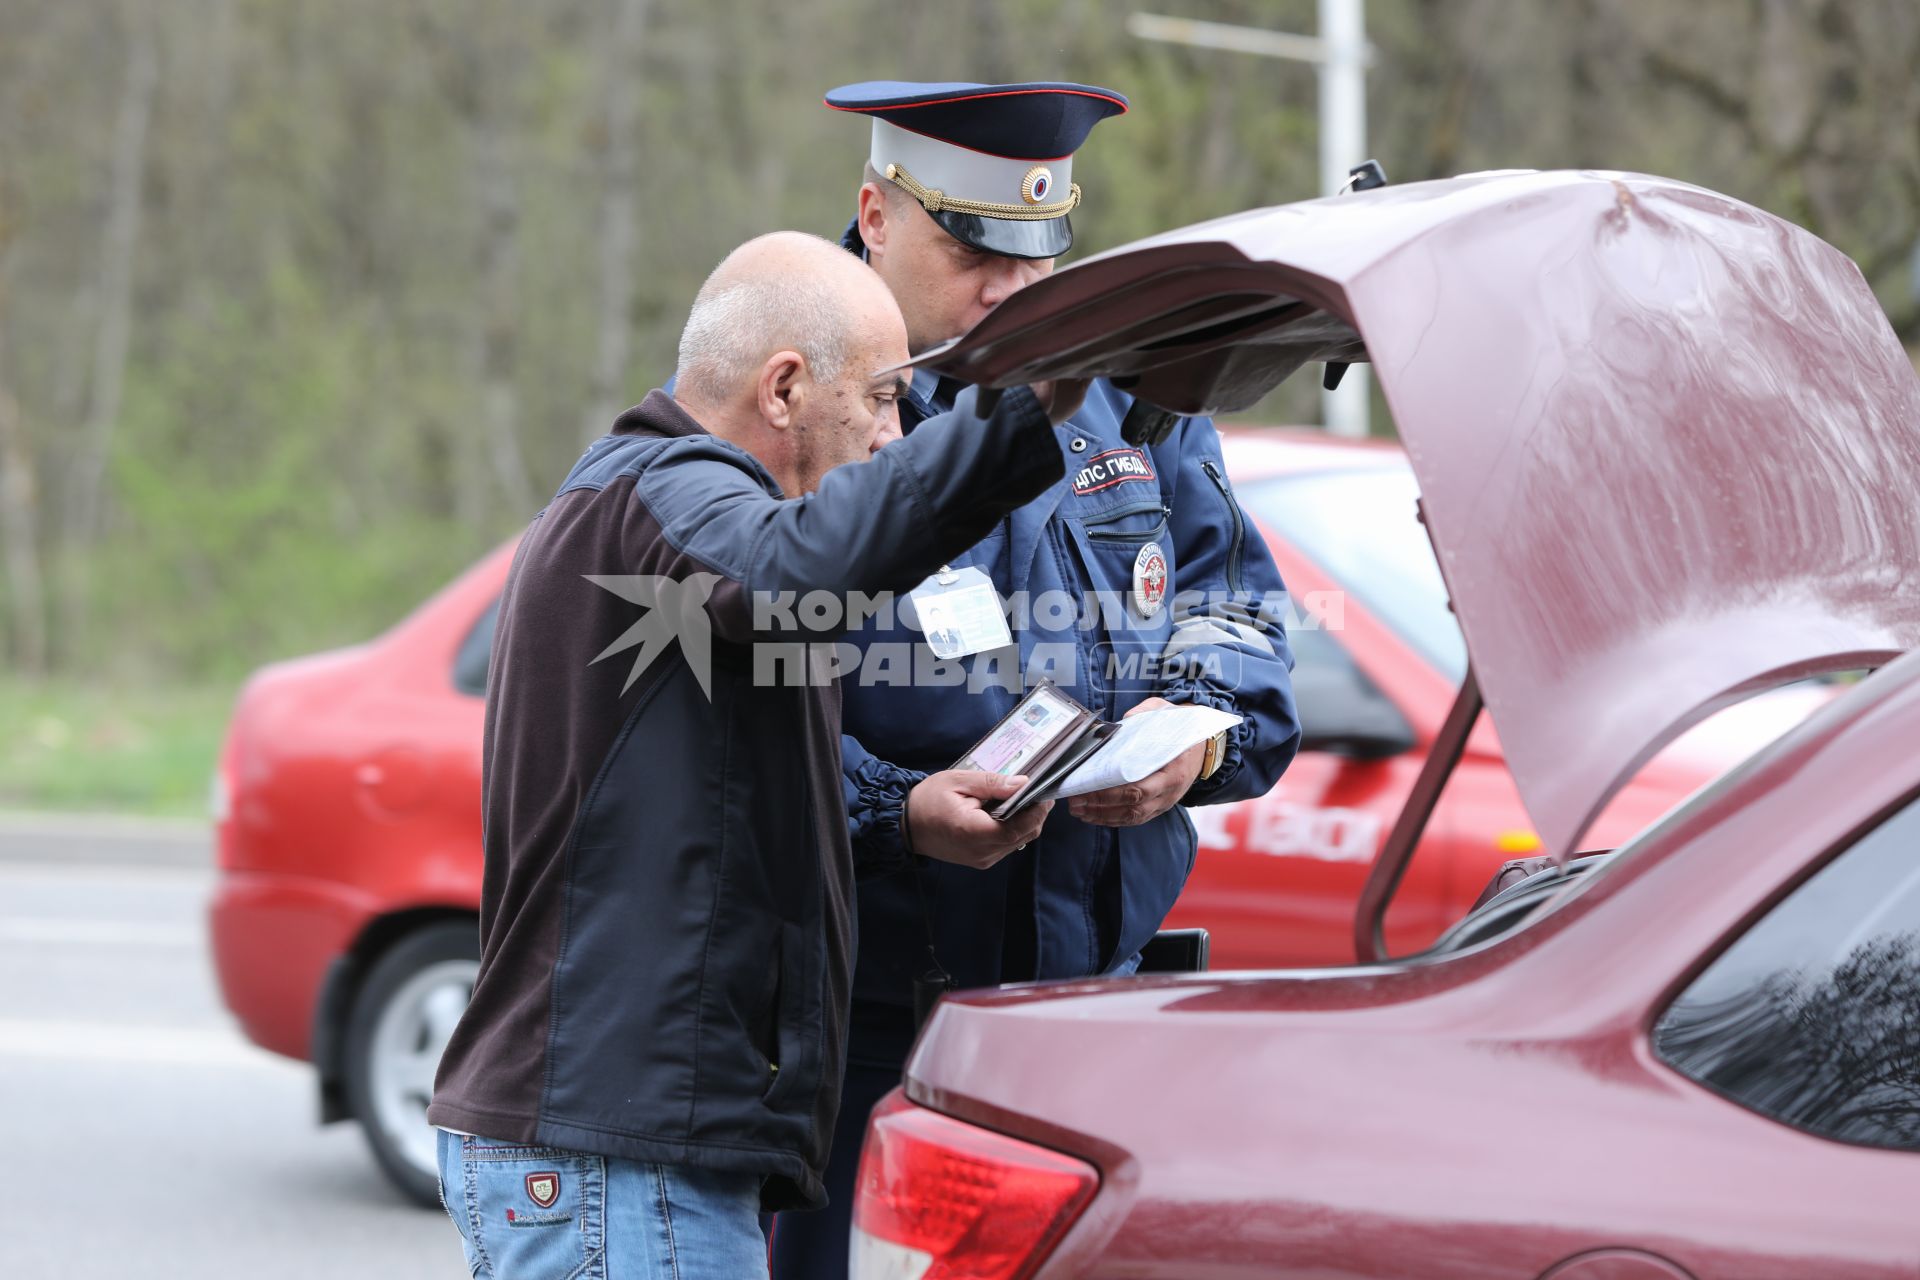 Пятигорск. Сотрудник дорожно-патрульной службы  проверяет документы водителя.